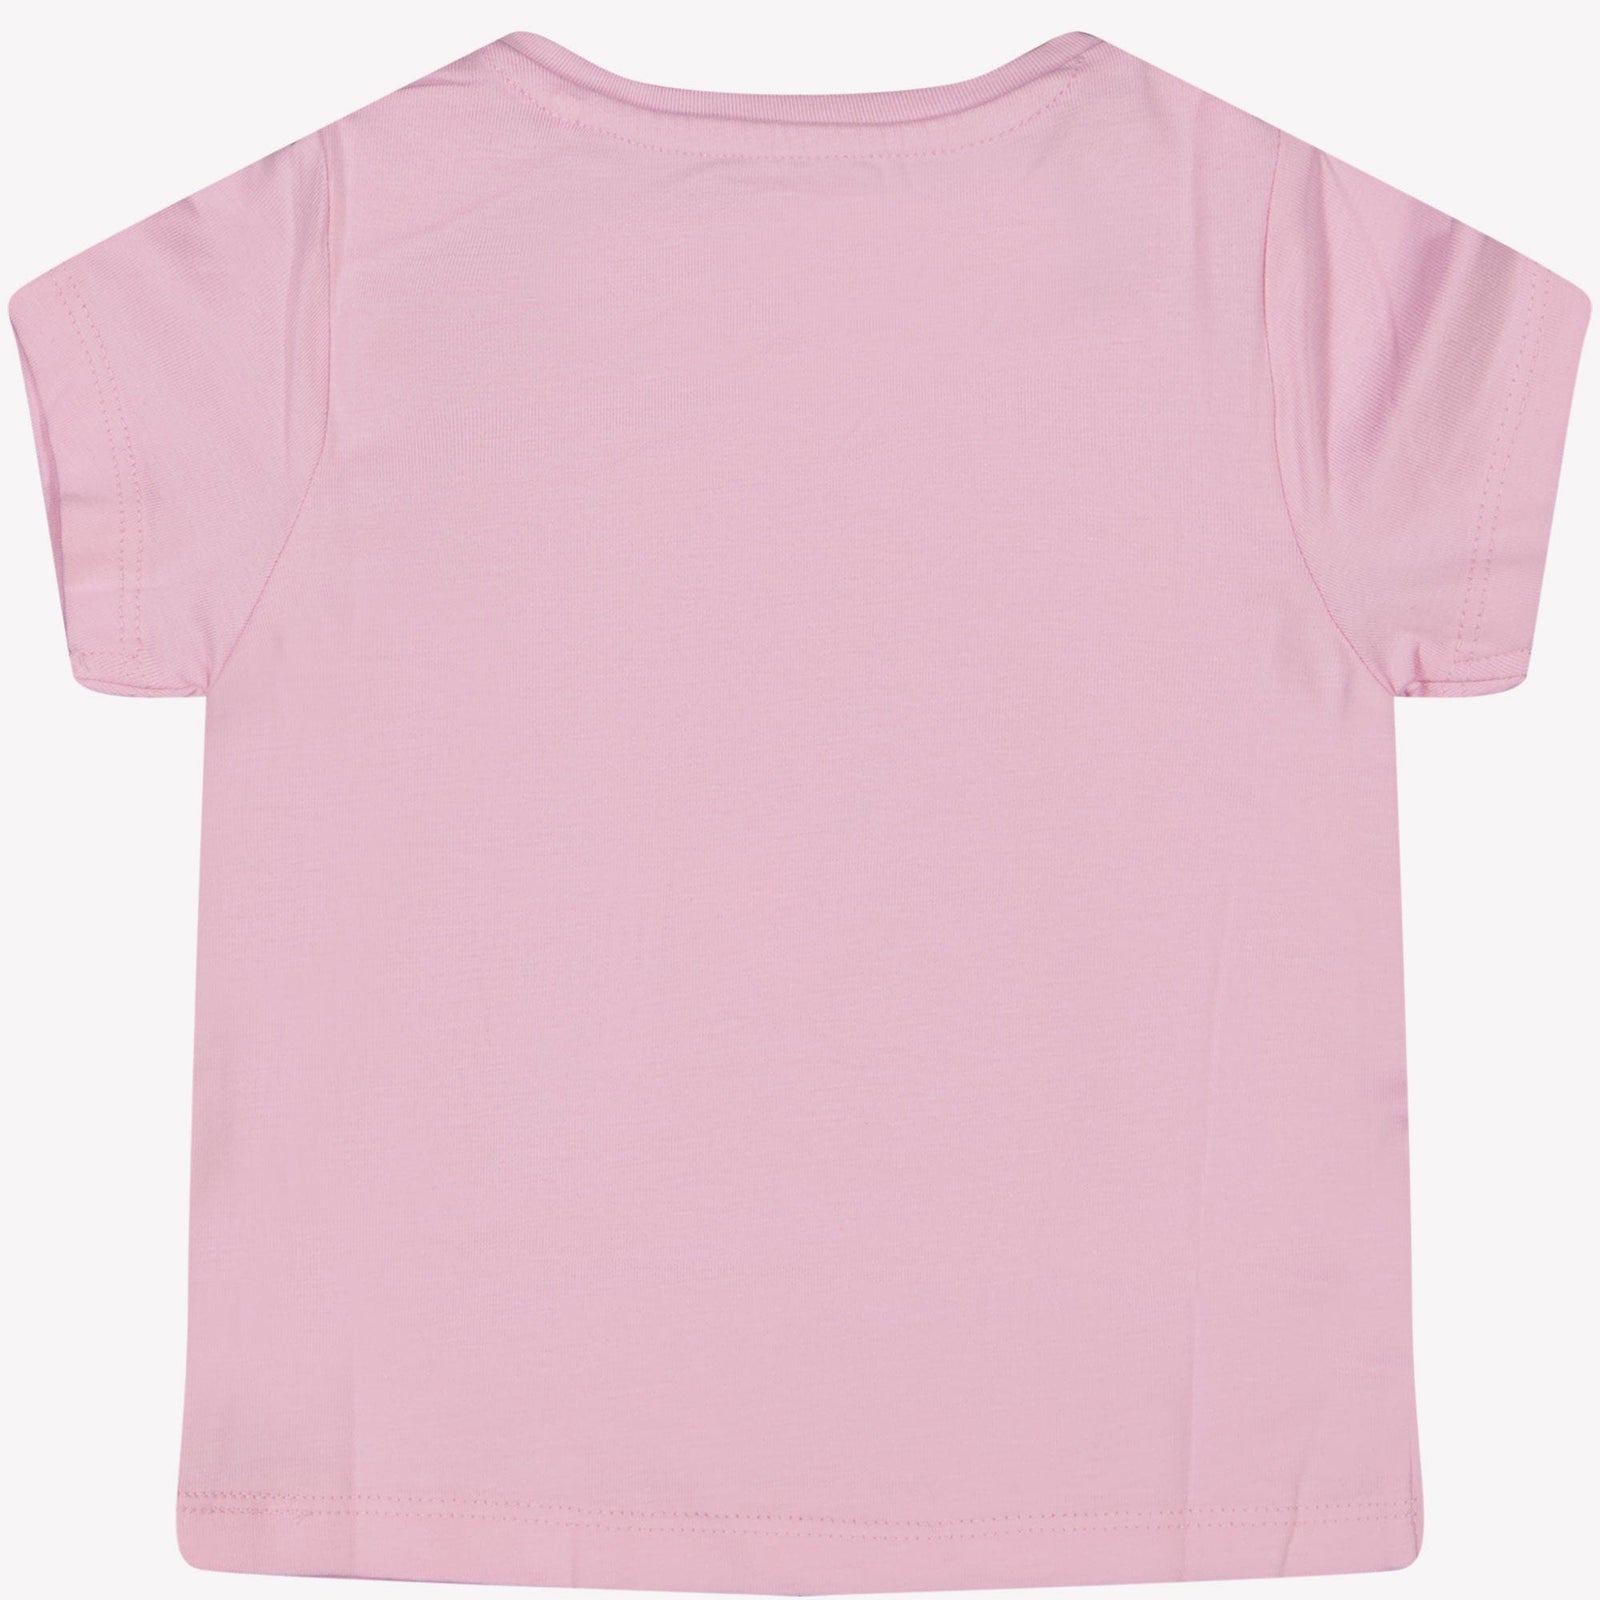 Guess Baby Meisjes T-Shirt Roze 12 mnd